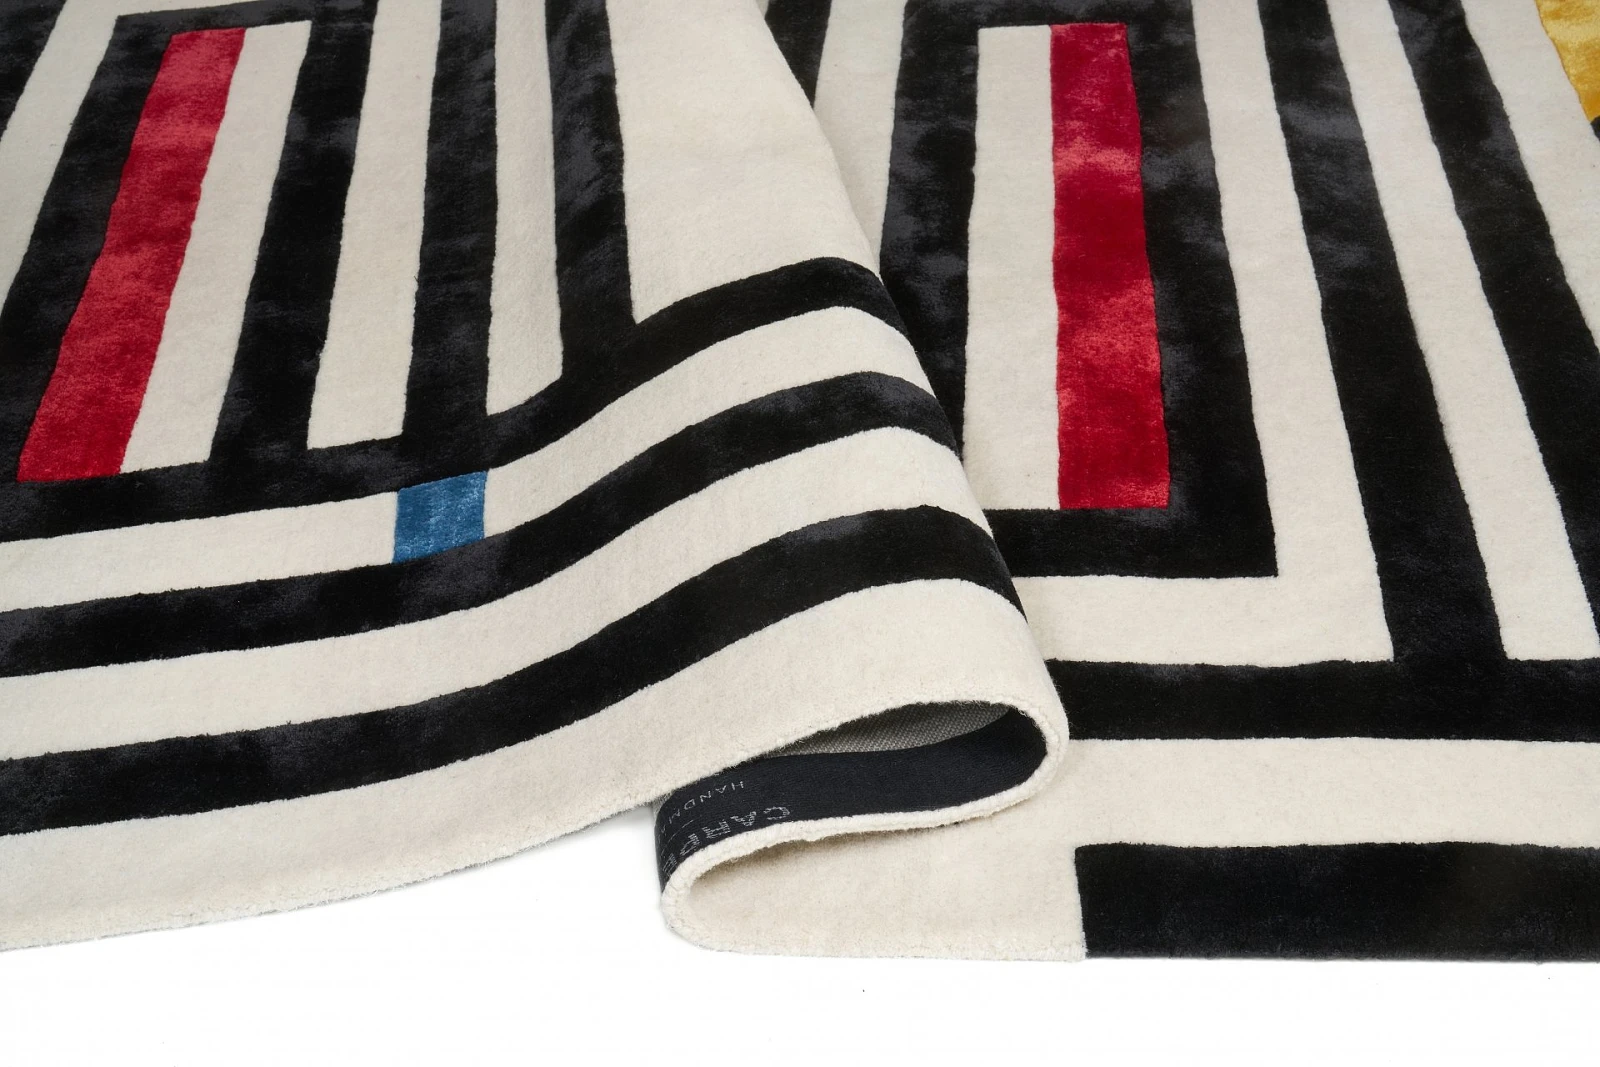 Kremowy dywan z czarnym wzorem przypominającym labirynt, z dodatkowymi czerwonymi, niebieskimi i żółtymi elementami.